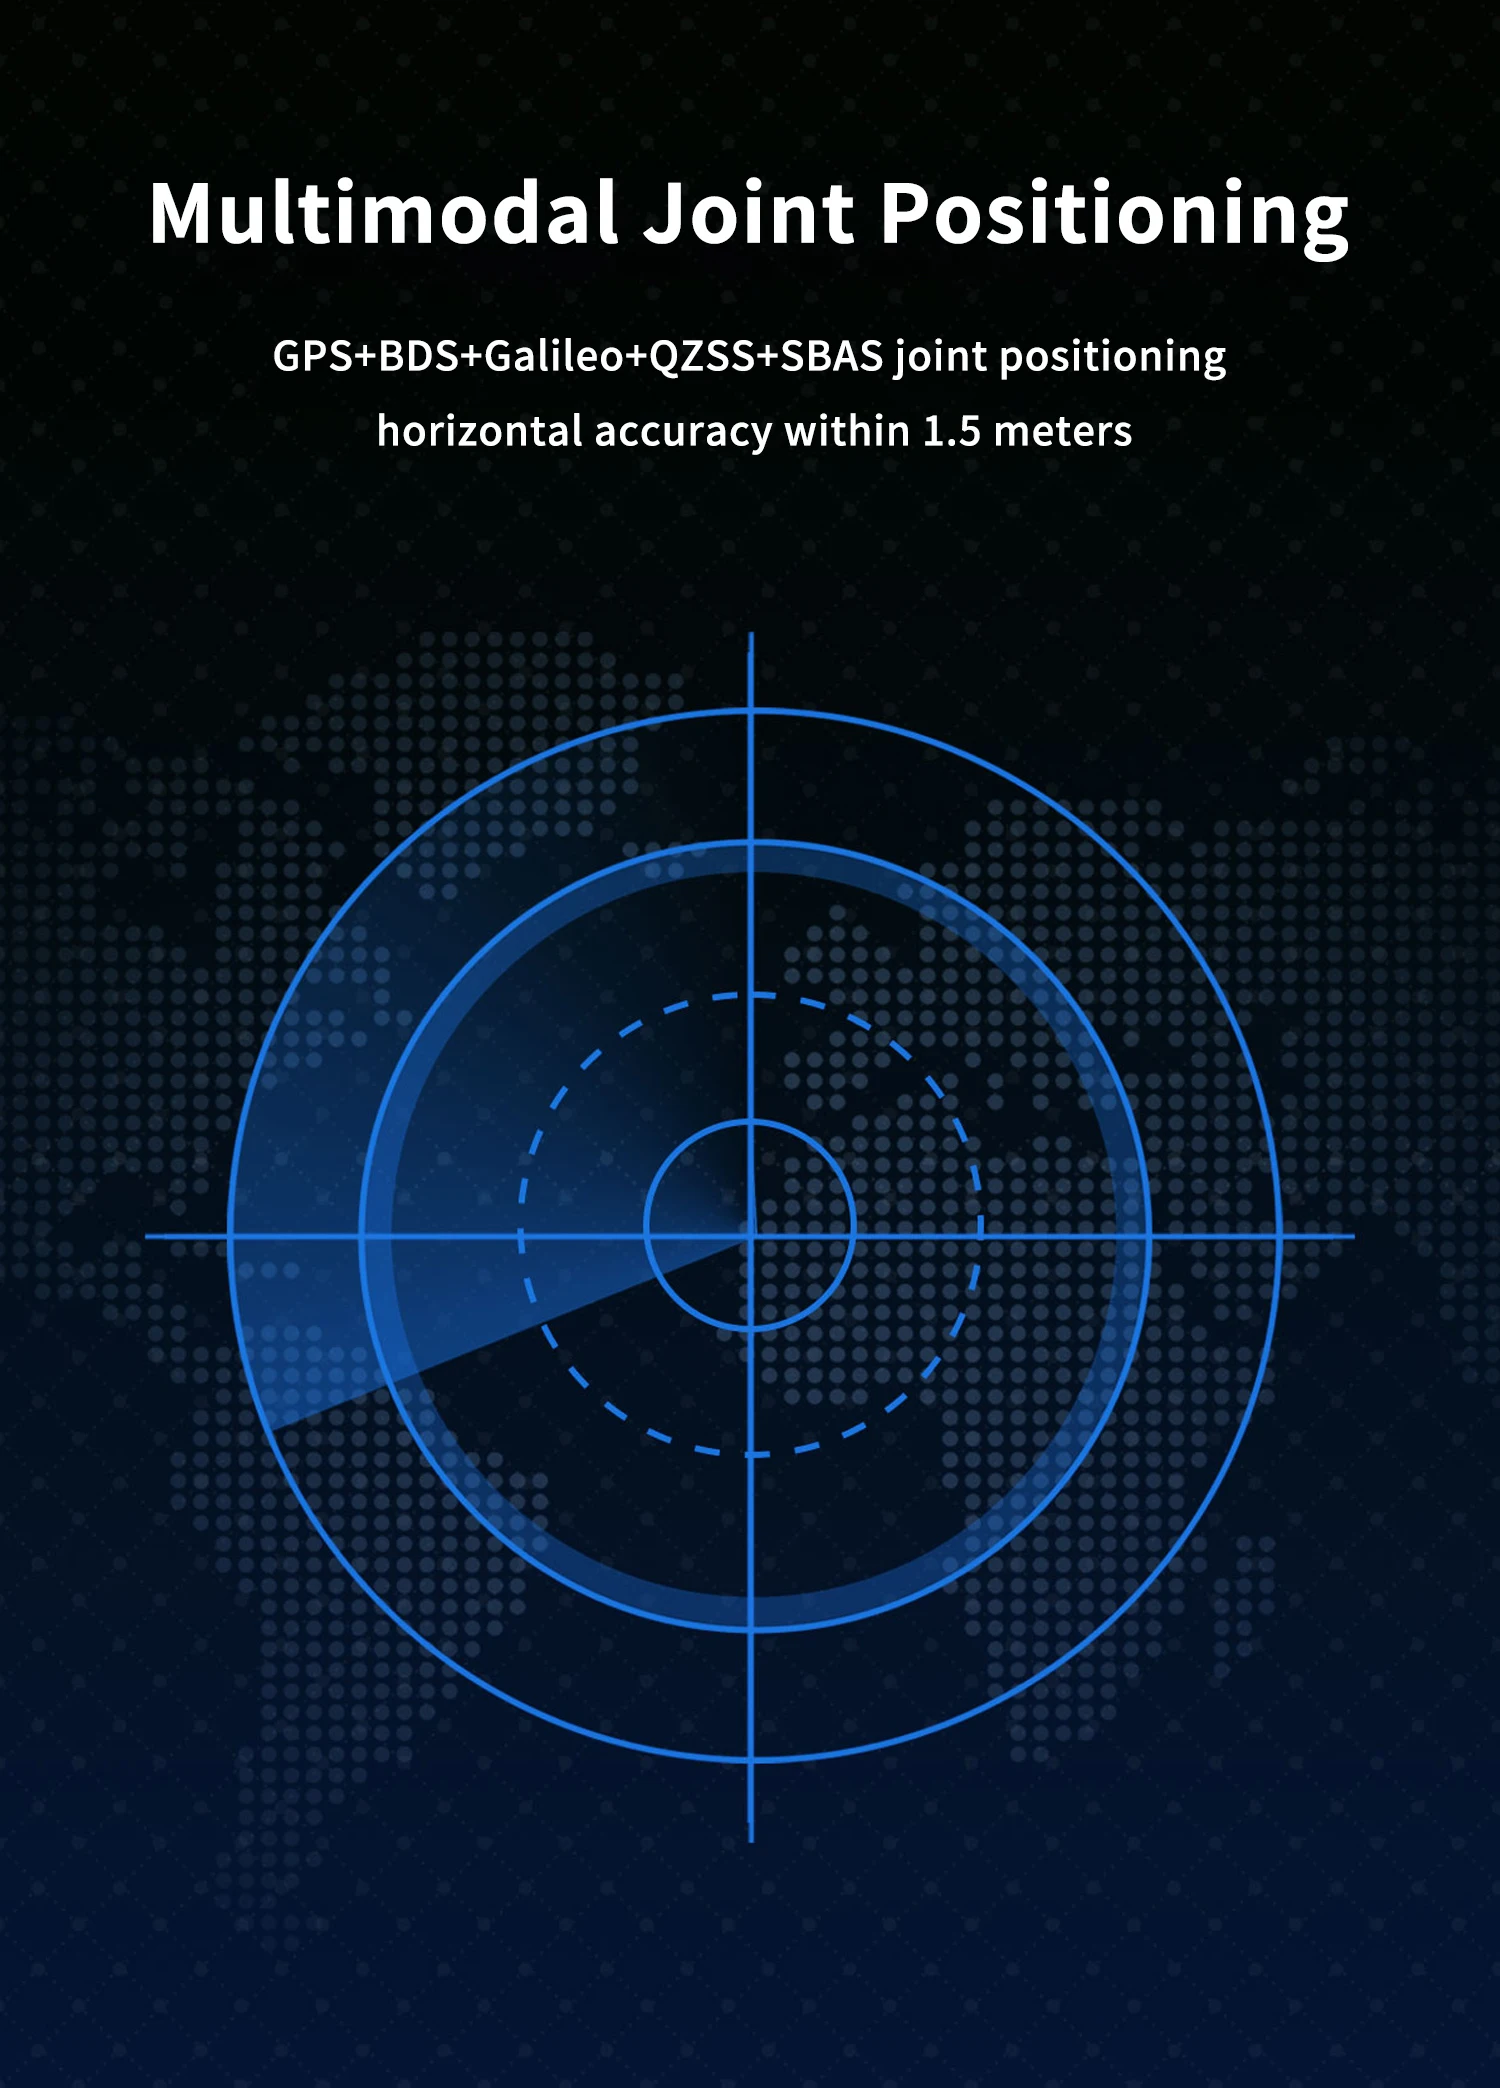 GEP-M10 Series GPS Module